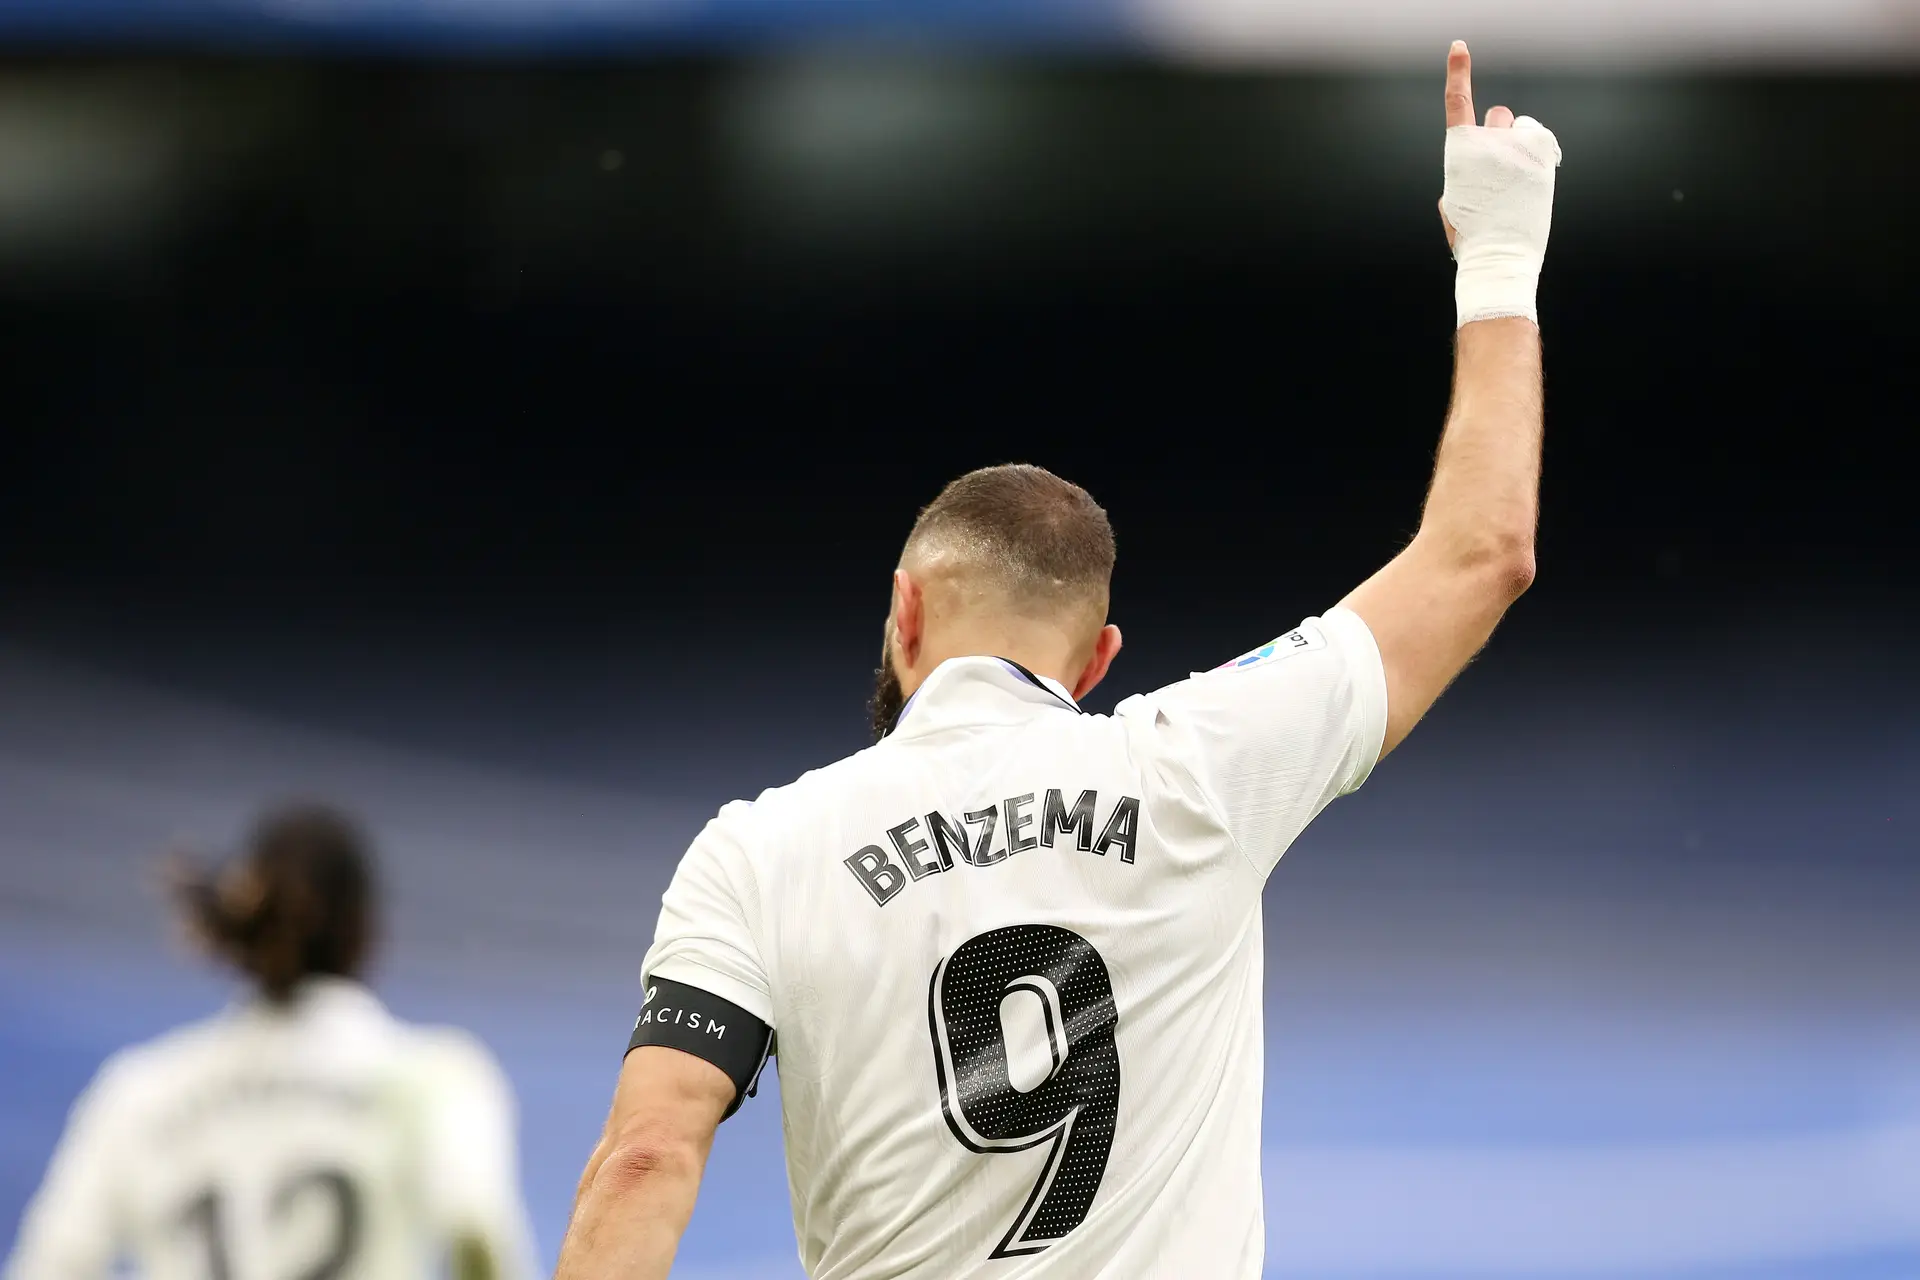 Benzema conquista o prêmio de melhor jogador da Europa na temporada, futebol internacional